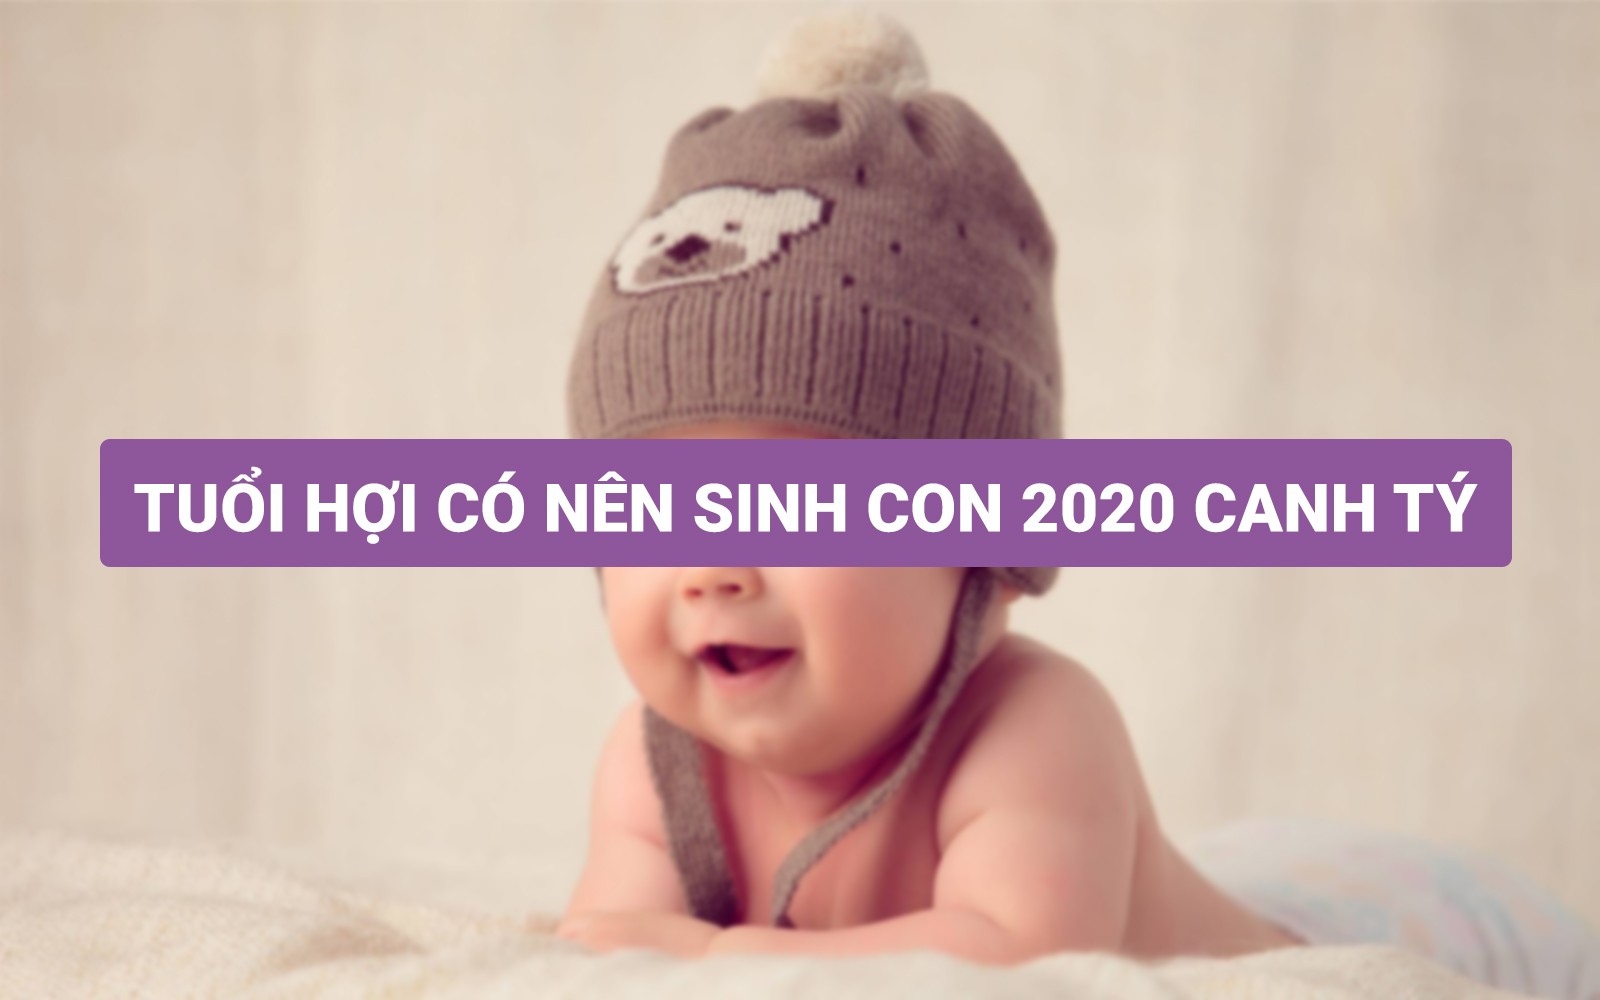 Tuổi Hợi có nên sinh con năm 2020 Canh Tý không?